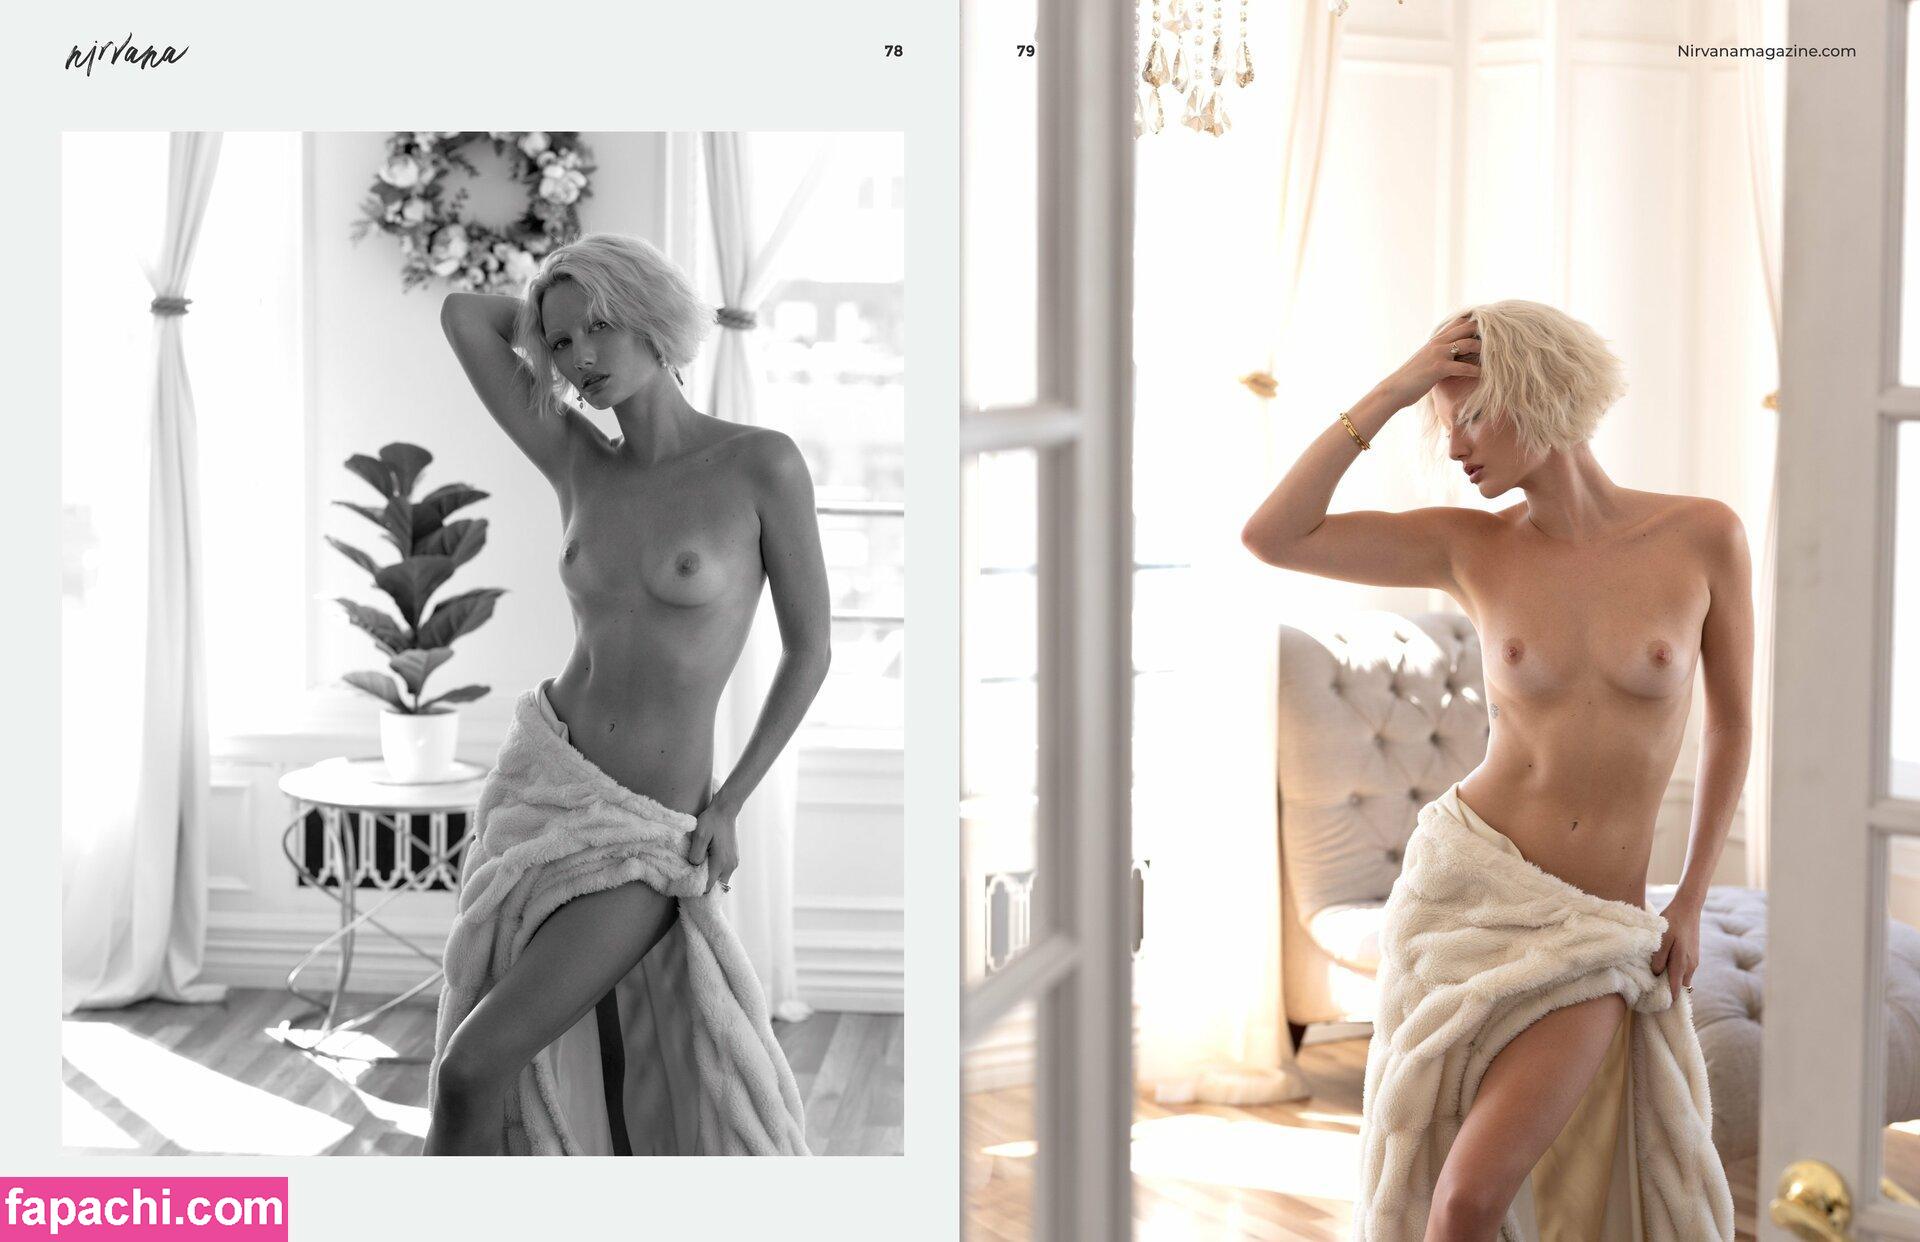 Haylee Mack / Haylee Ross / hayleemack leaked nude photo #0038 from OnlyFans/Patreon